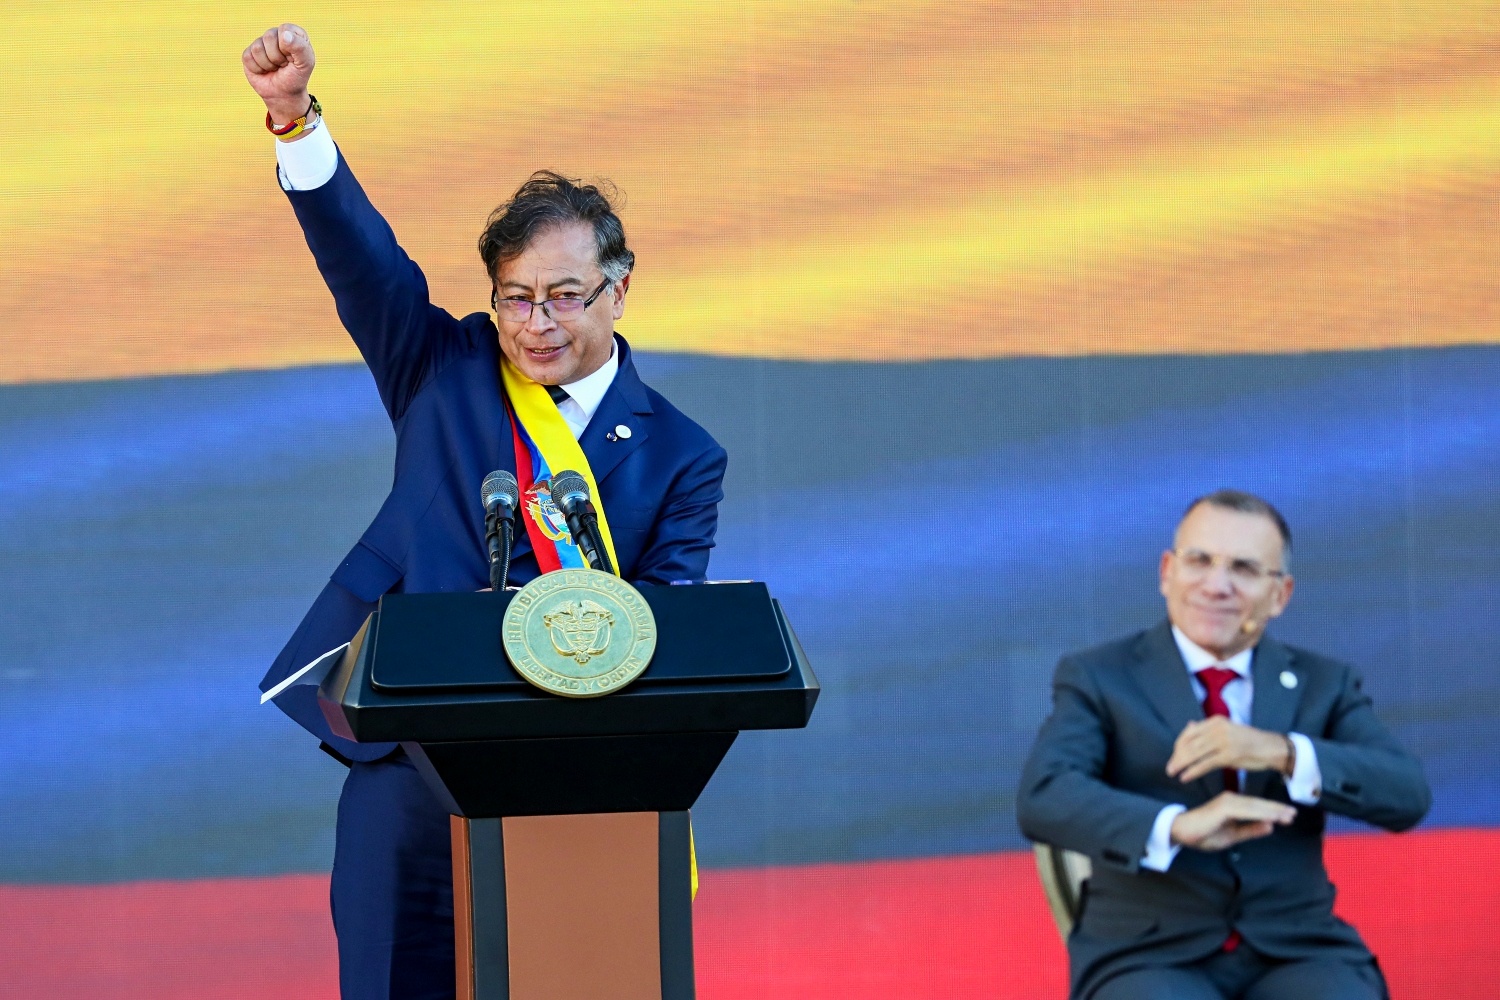 Η Κολομβία αλλάζει σελίδα: Ορκίστηκε πρόεδρος ο αριστερός Gustavo Petro